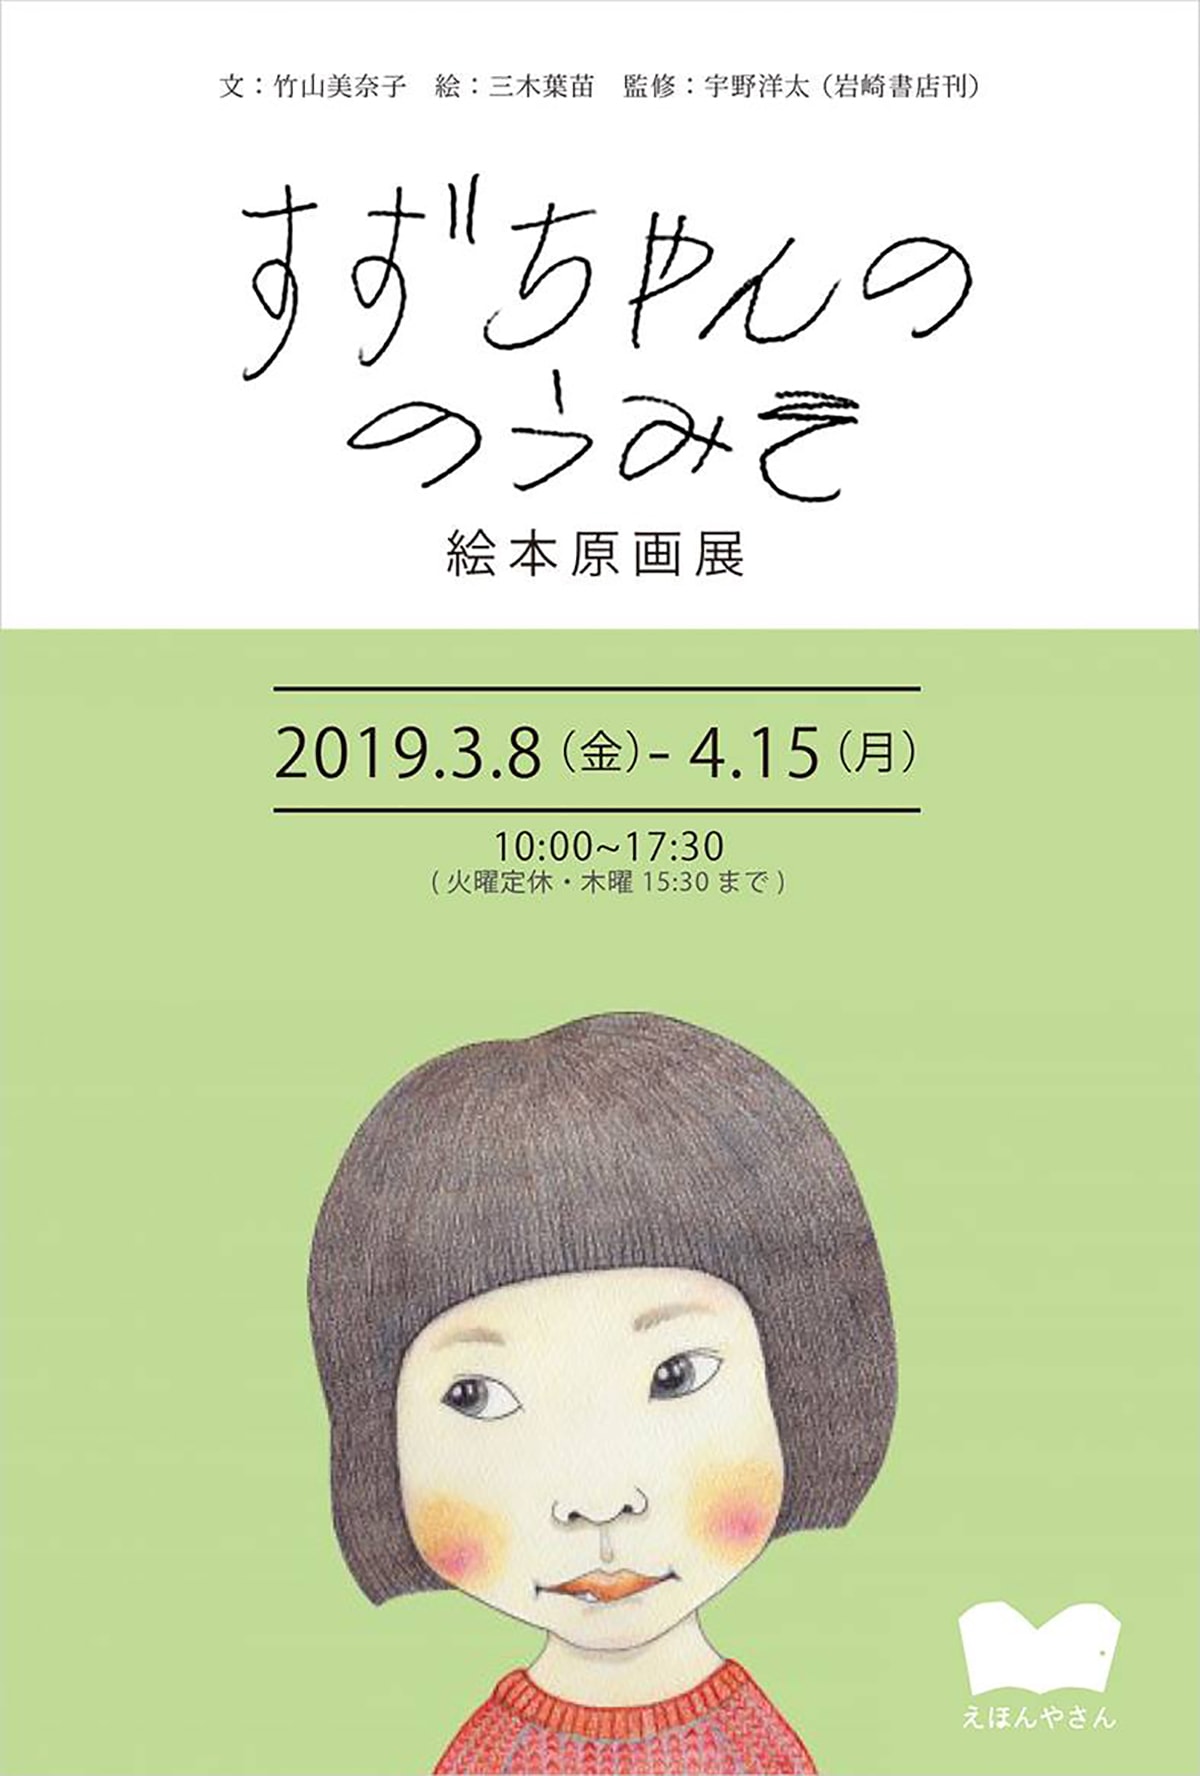 自閉症の女の子を描いた絵本 すずちゃんののうみそ の原画展が静岡 三島で開催 Fasu ファス